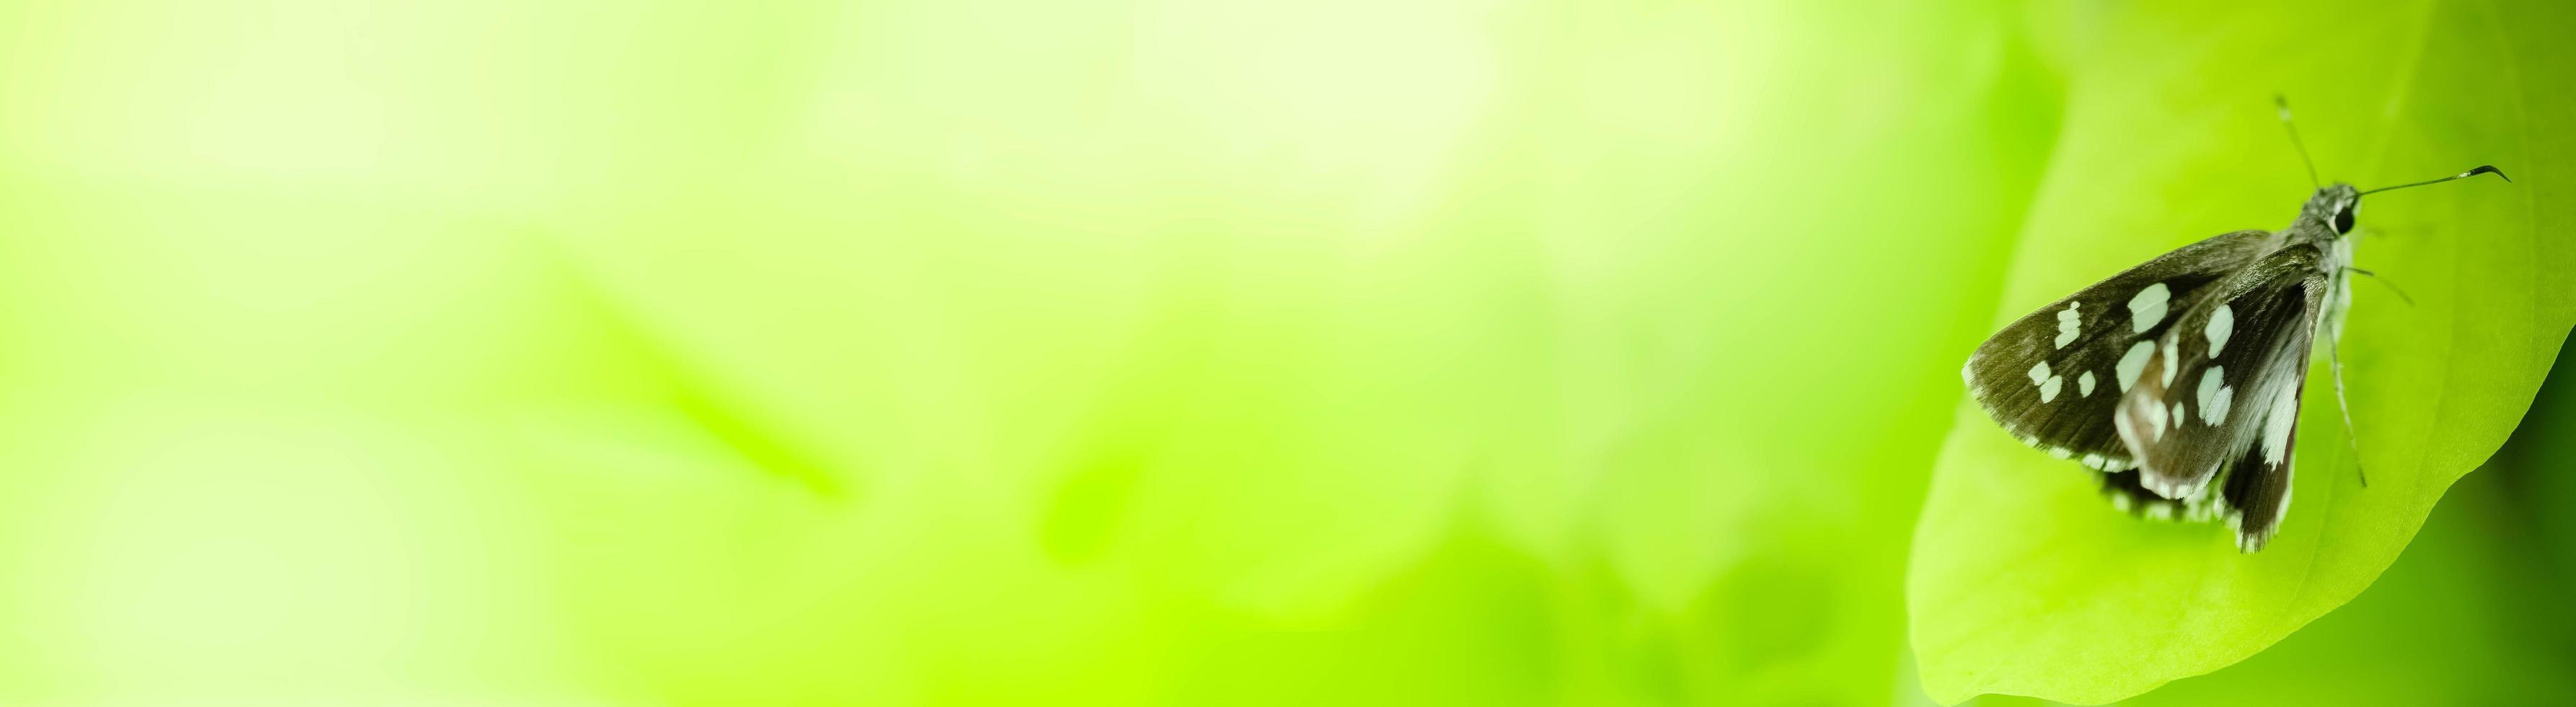 Feche a natureza da borboleta de folha verde sobre fundo desfocado de vegetação no jardim. folhas verdes naturais plantas usadas como capa de primavera verde ambiente ecologia papel de parede verde limão foto